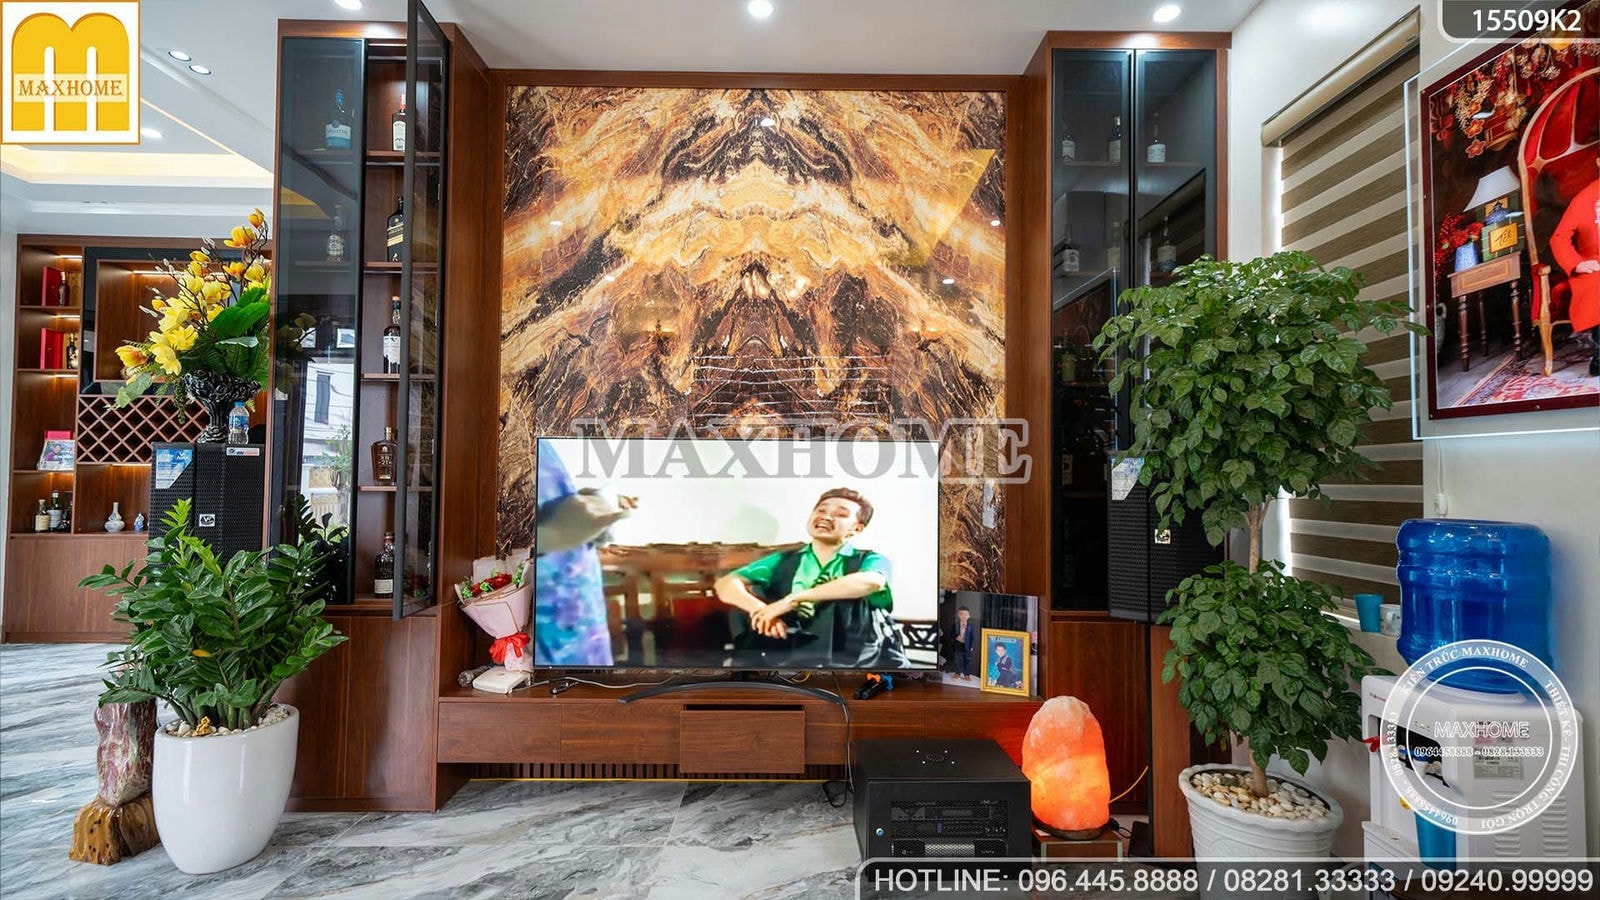 Maxhome hoàn thiện siêu phẩm nhà 2 tầng đẹp ở Bắc Giang | MH02664